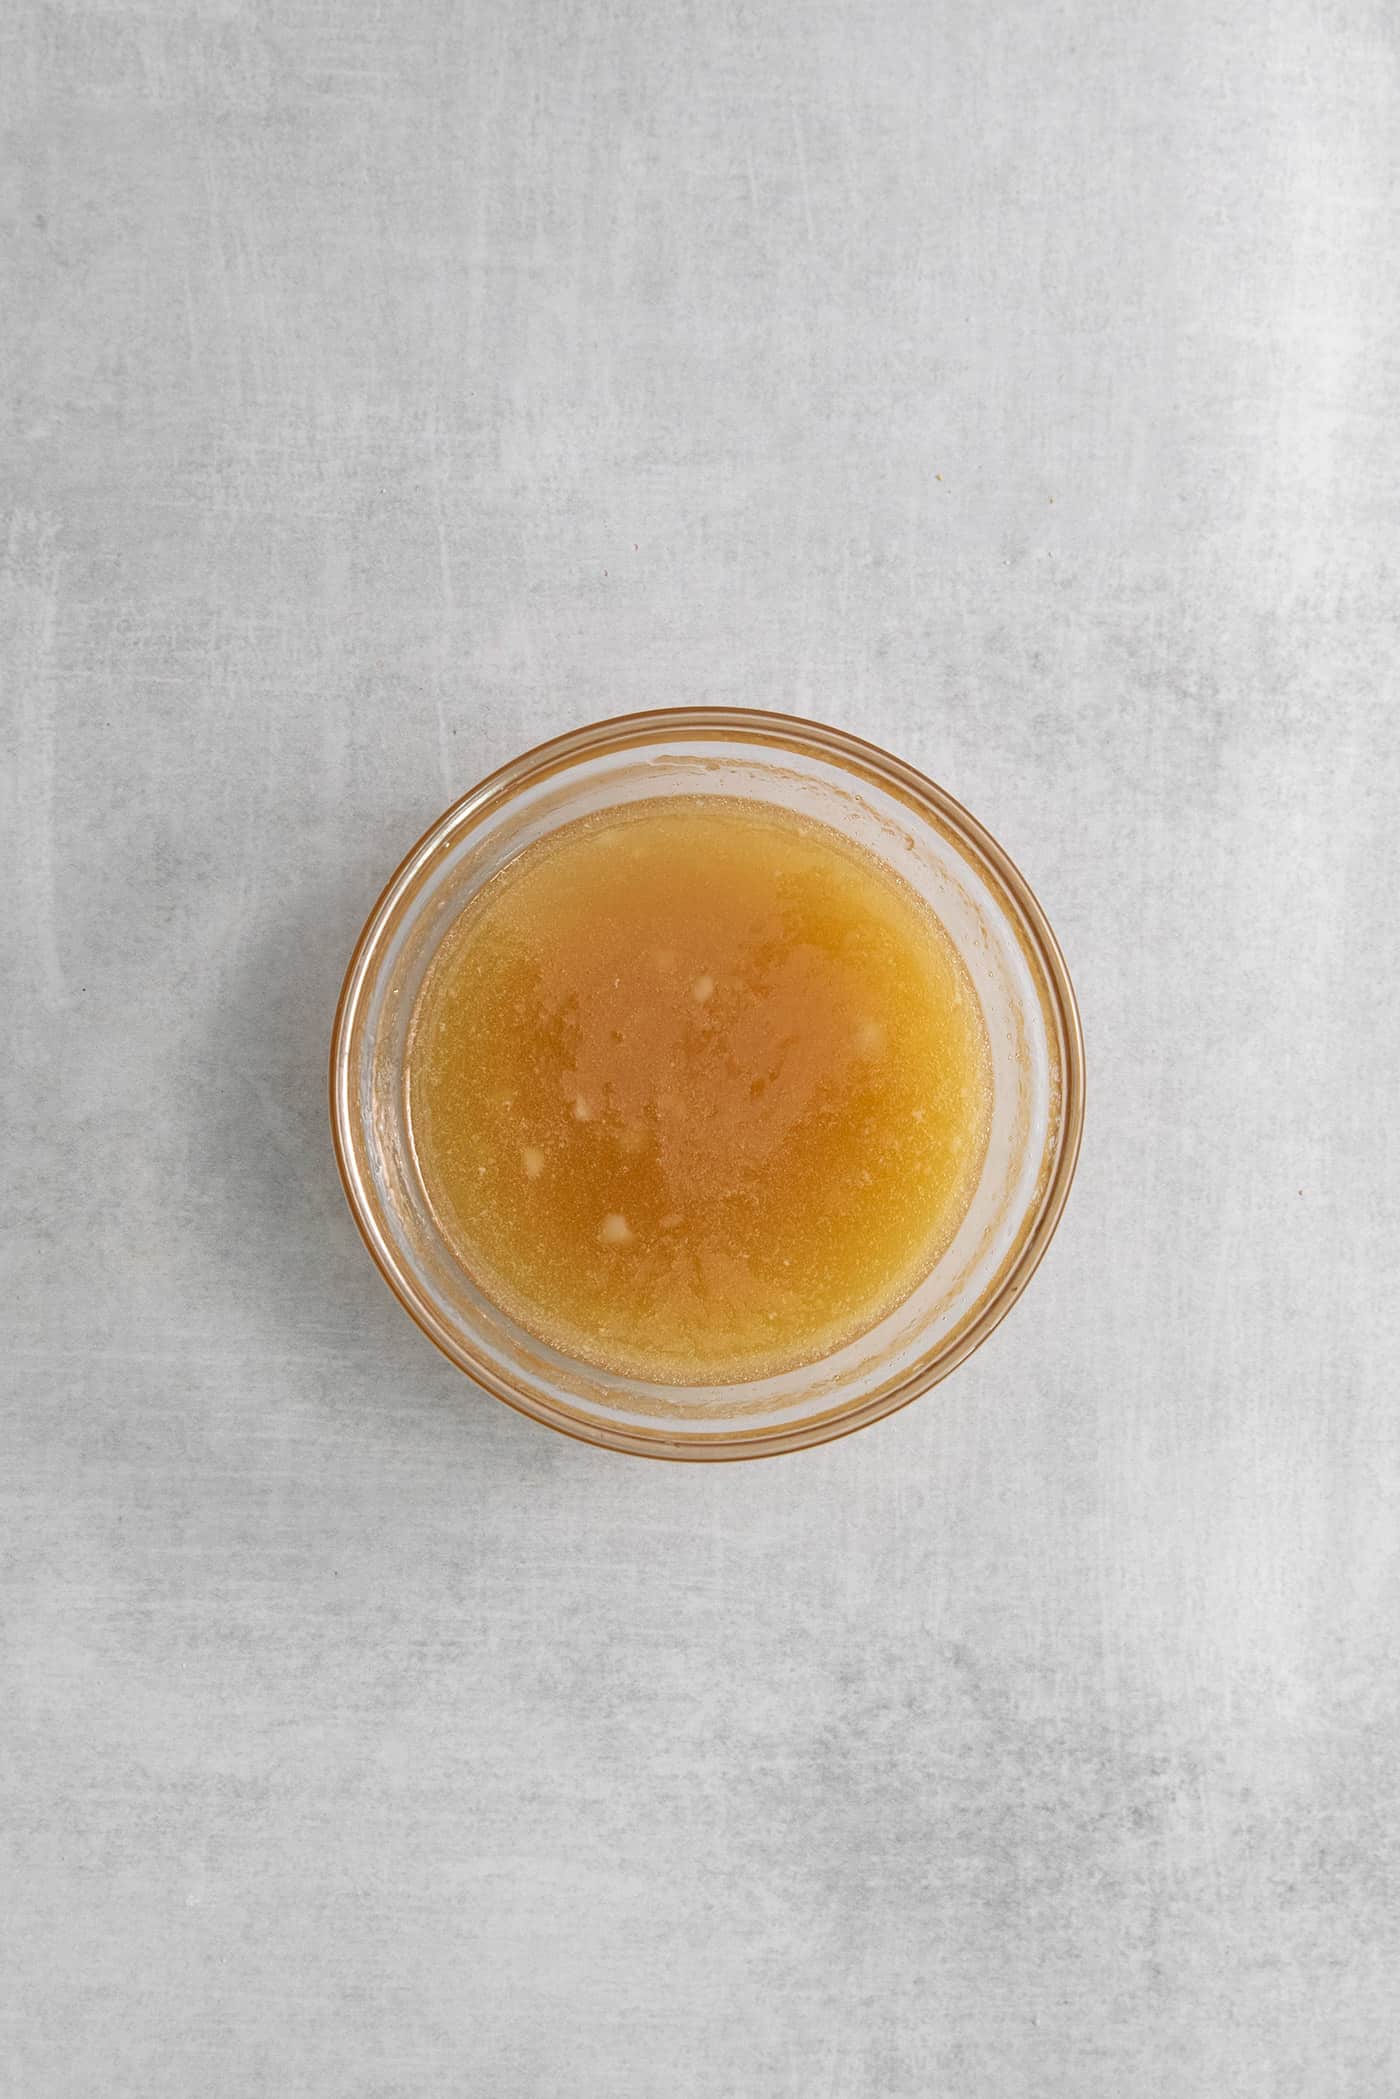 Overhead view of honey garlic butter